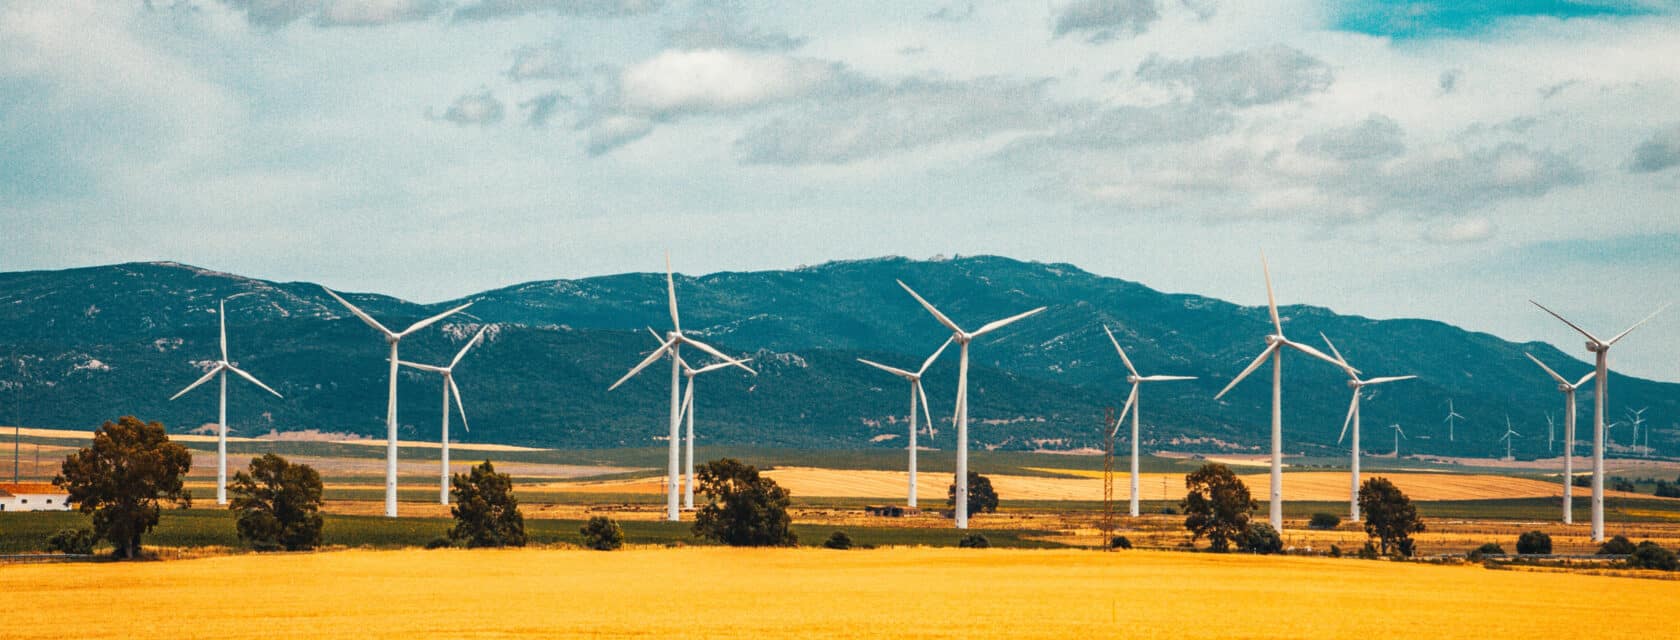 Wind turbines in a golden field below mountain foothills.